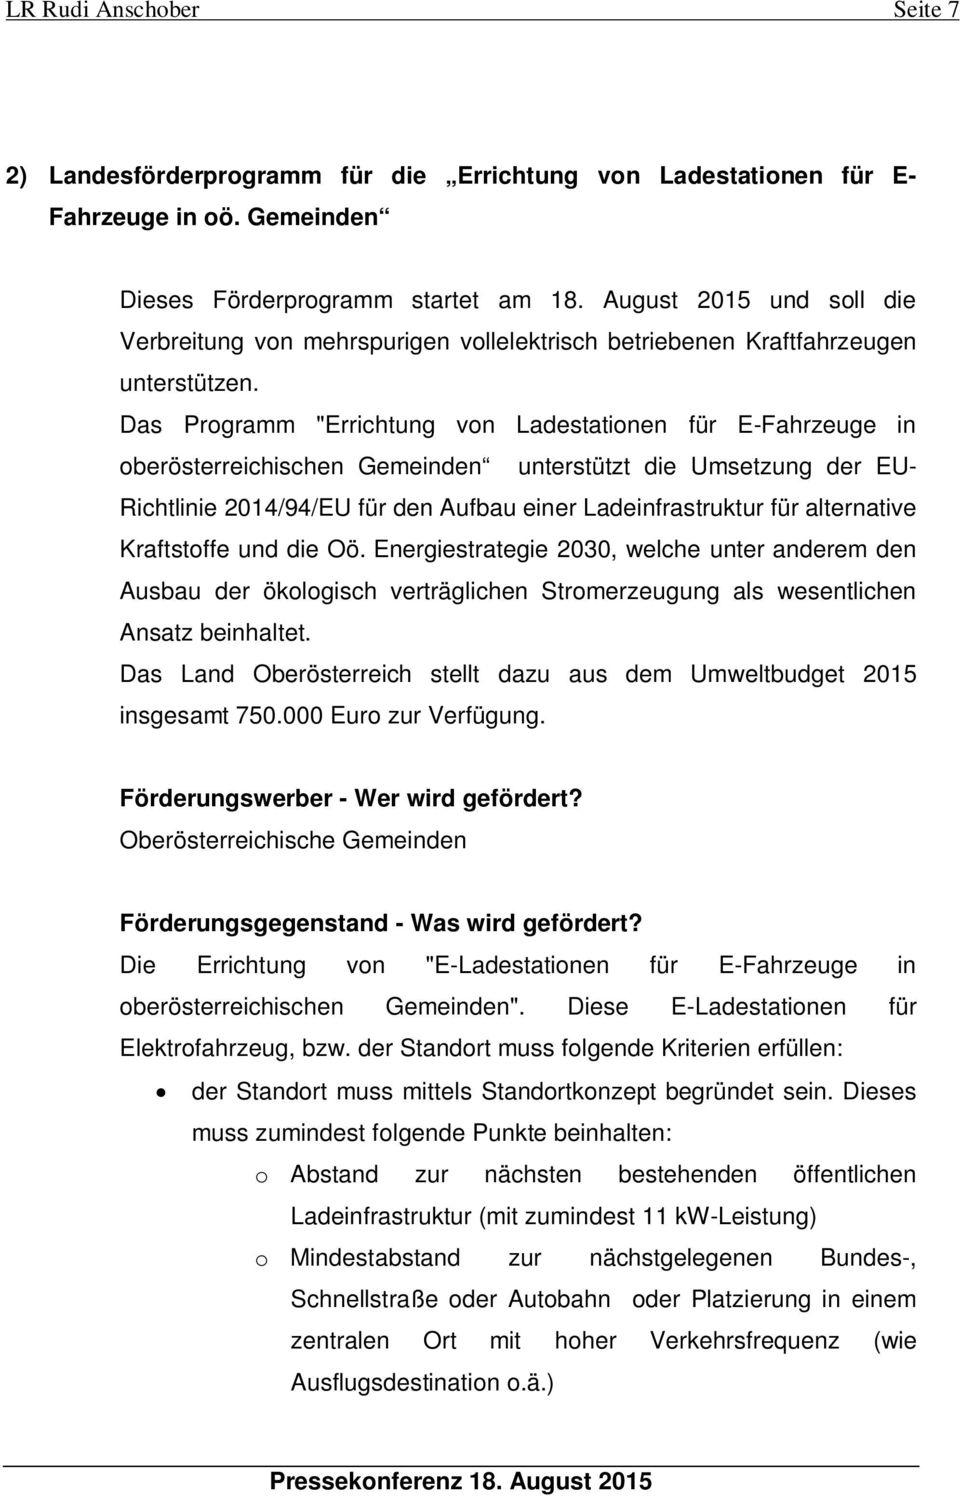 Das Programm "Errichtung von Ladestationen für E-Fahrzeuge in oberösterreichischen Gemeinden unterstützt die Umsetzung der EU- Richtlinie 2014/94/EU für den Aufbau einer Ladeinfrastruktur für